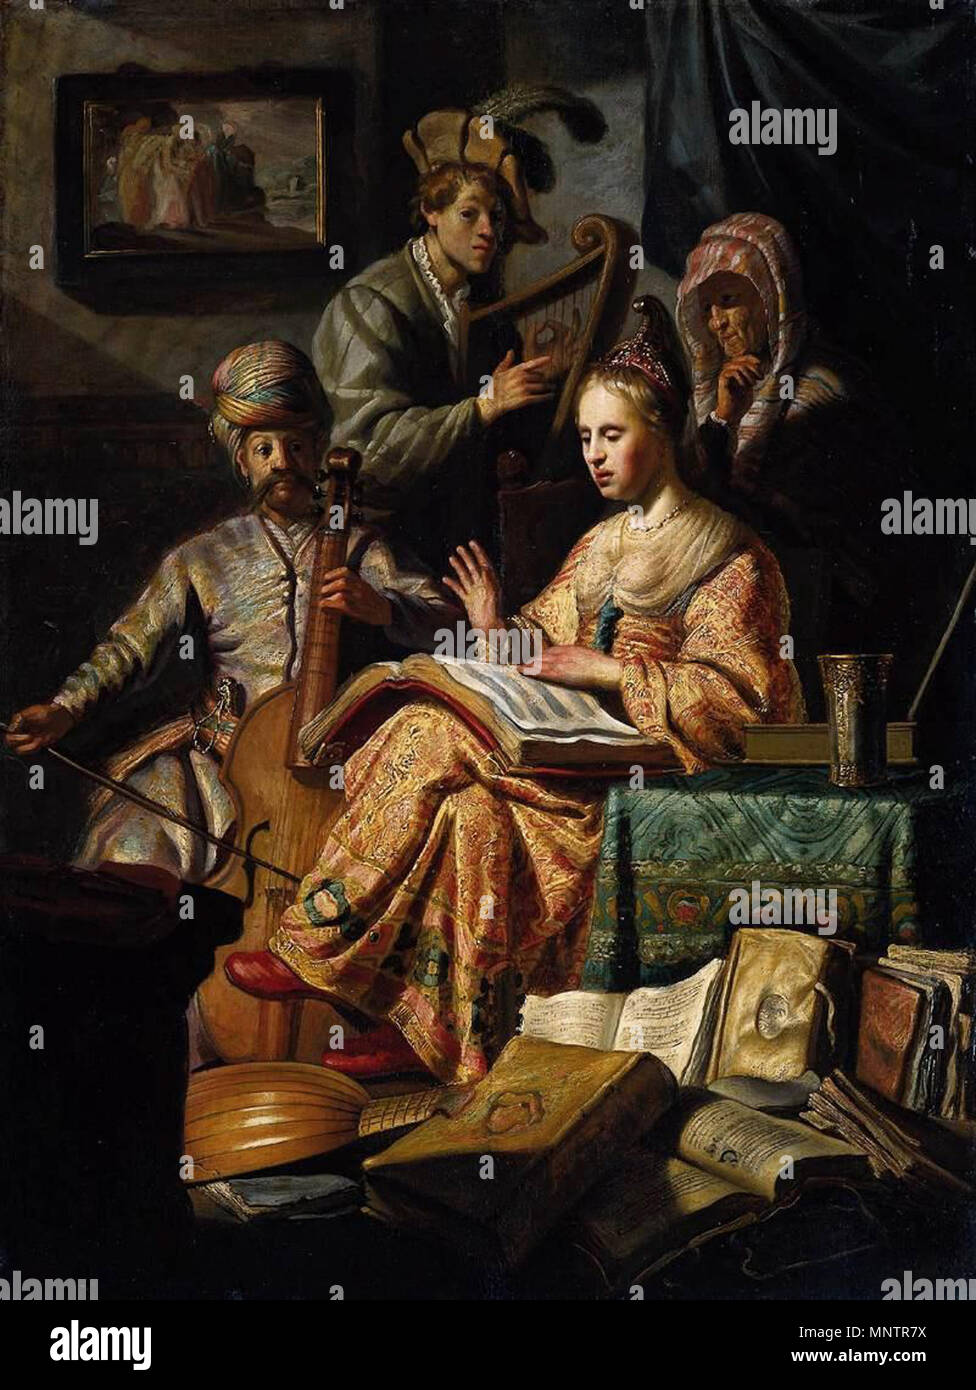 Die Musik Party. Allegorische Musik Party. Auf der linken Seite ein Mann in orientalischer Kleidung und einen Turban spielt die Gambe. Rechts neben ihm ein Mann spielt die Harfe. Eine junge Frau sitzt neben einer Tabelle mit einem geöffneten Song Book auf ihrem Schoß beim Singen. Hinter ihr eine ältere Frau mit Kopftuch Uhren auf. Verstreut auf dem Boden sind Musikinstrumente (eine Laute, Violine) und Stapel von Büchern. An der Wand ein Gemälde zeigt viel Flucht aus Sodom gesehen werden kann. 1626. 1050 Rembrandt - die Musik Party-WGA 19249 Stockfoto